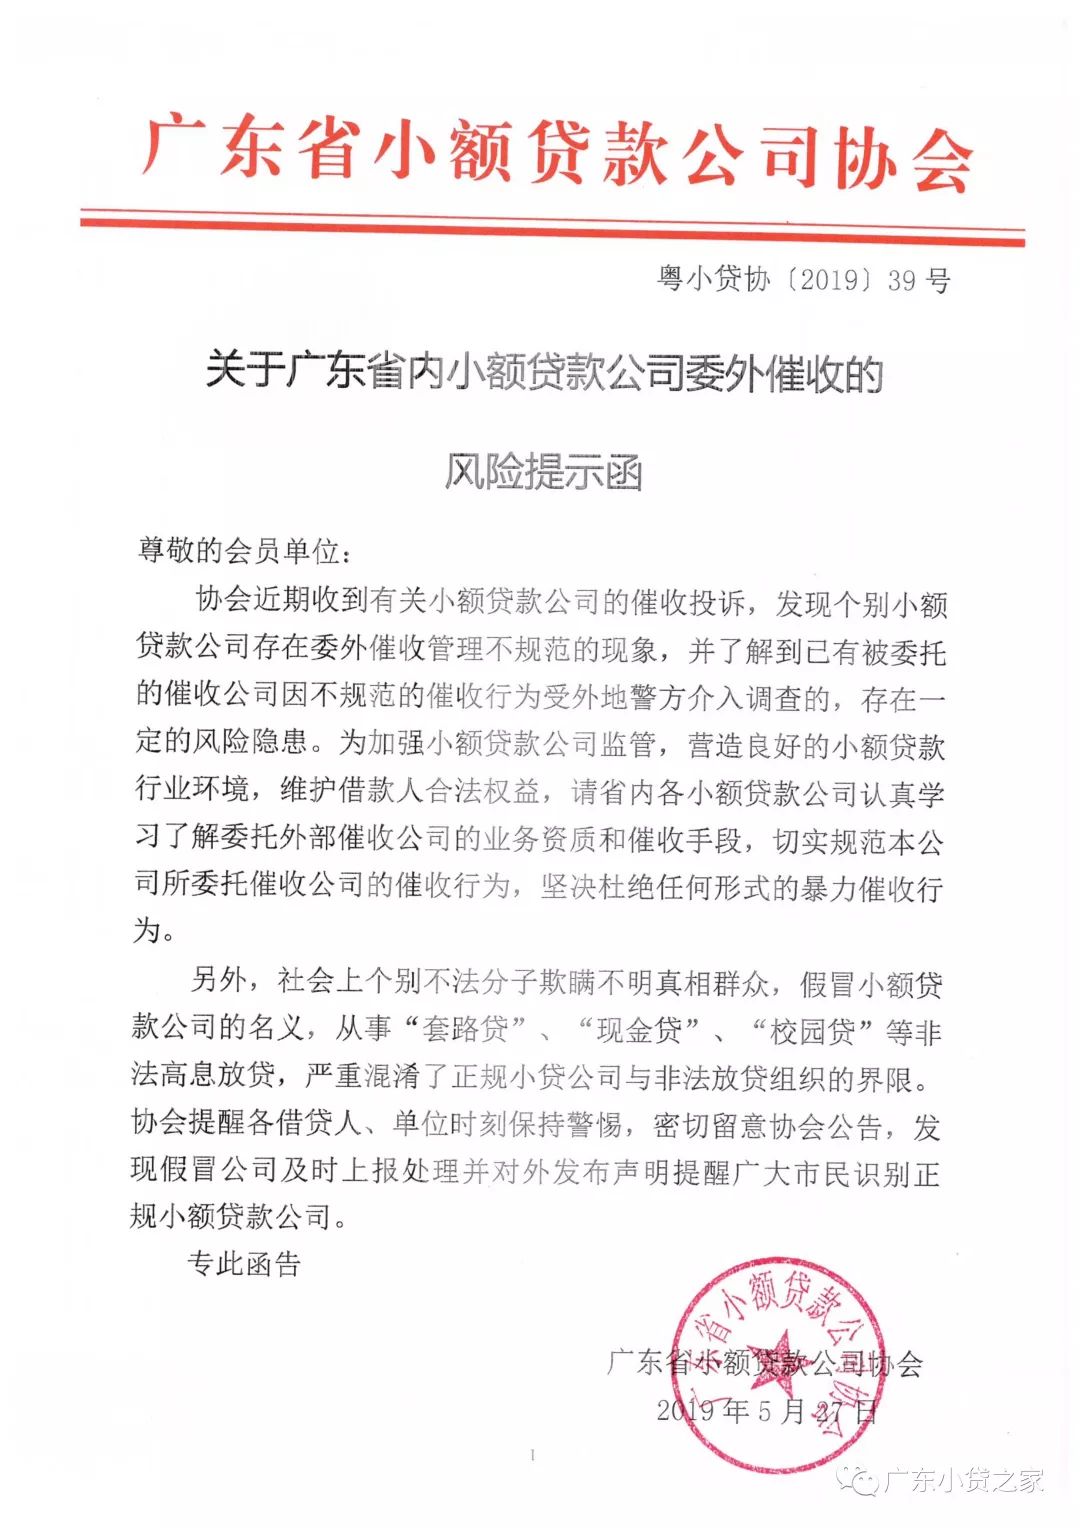 【协会通知】关于广东省内小额贷款公司委外催收的风险提示函